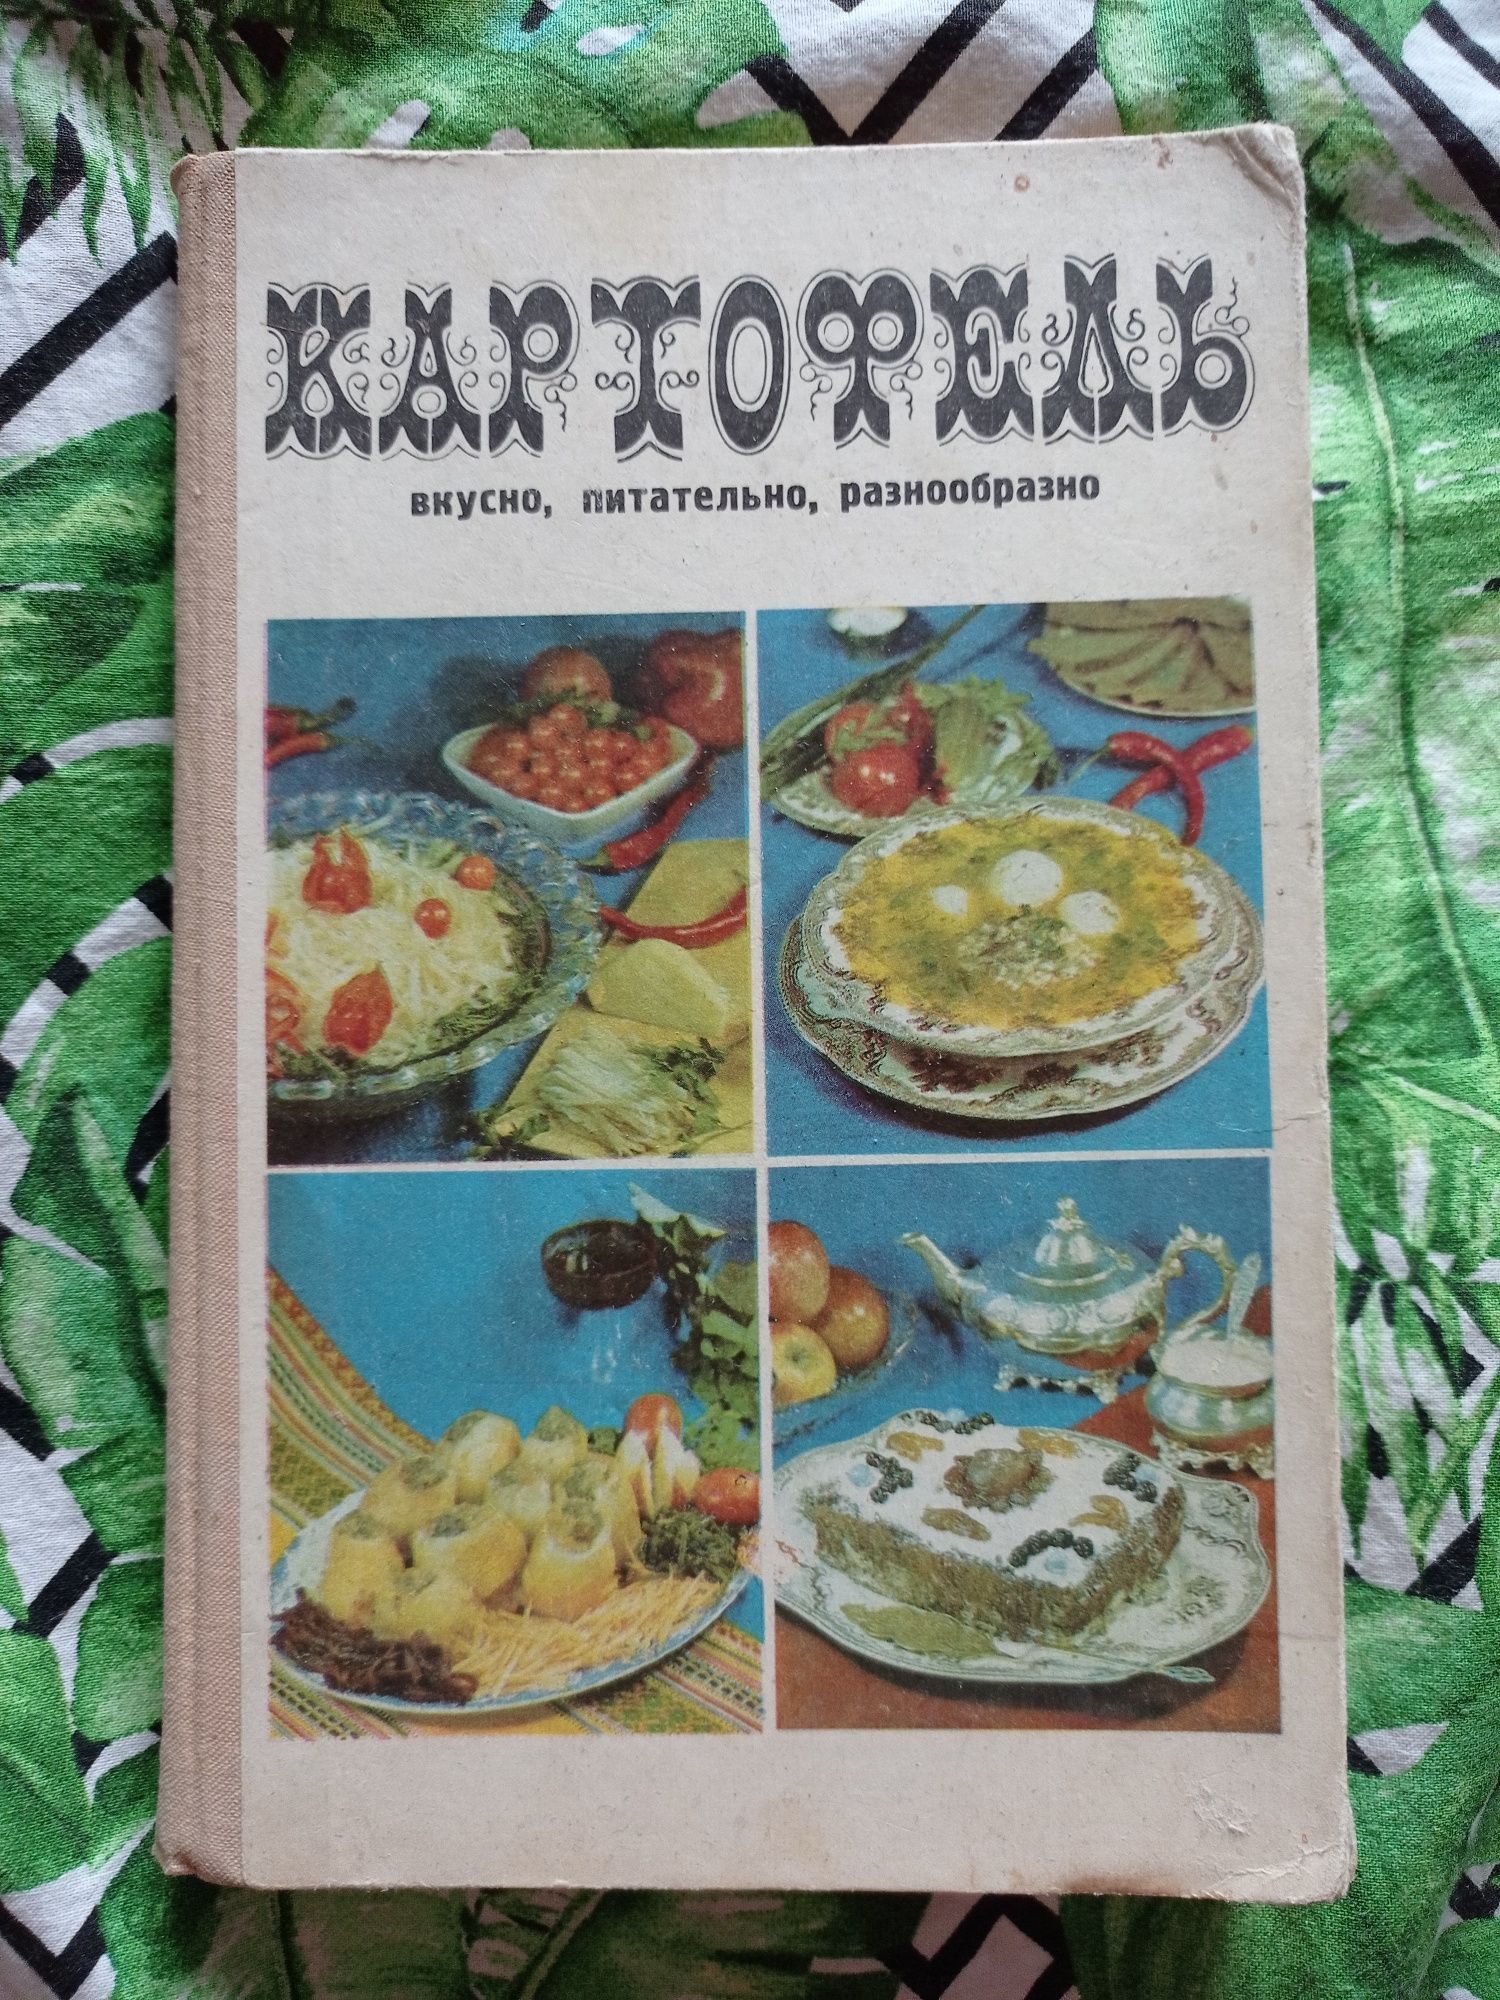 Картофель вкусно, питательно 600 блюд из народной кухни 1977 г.